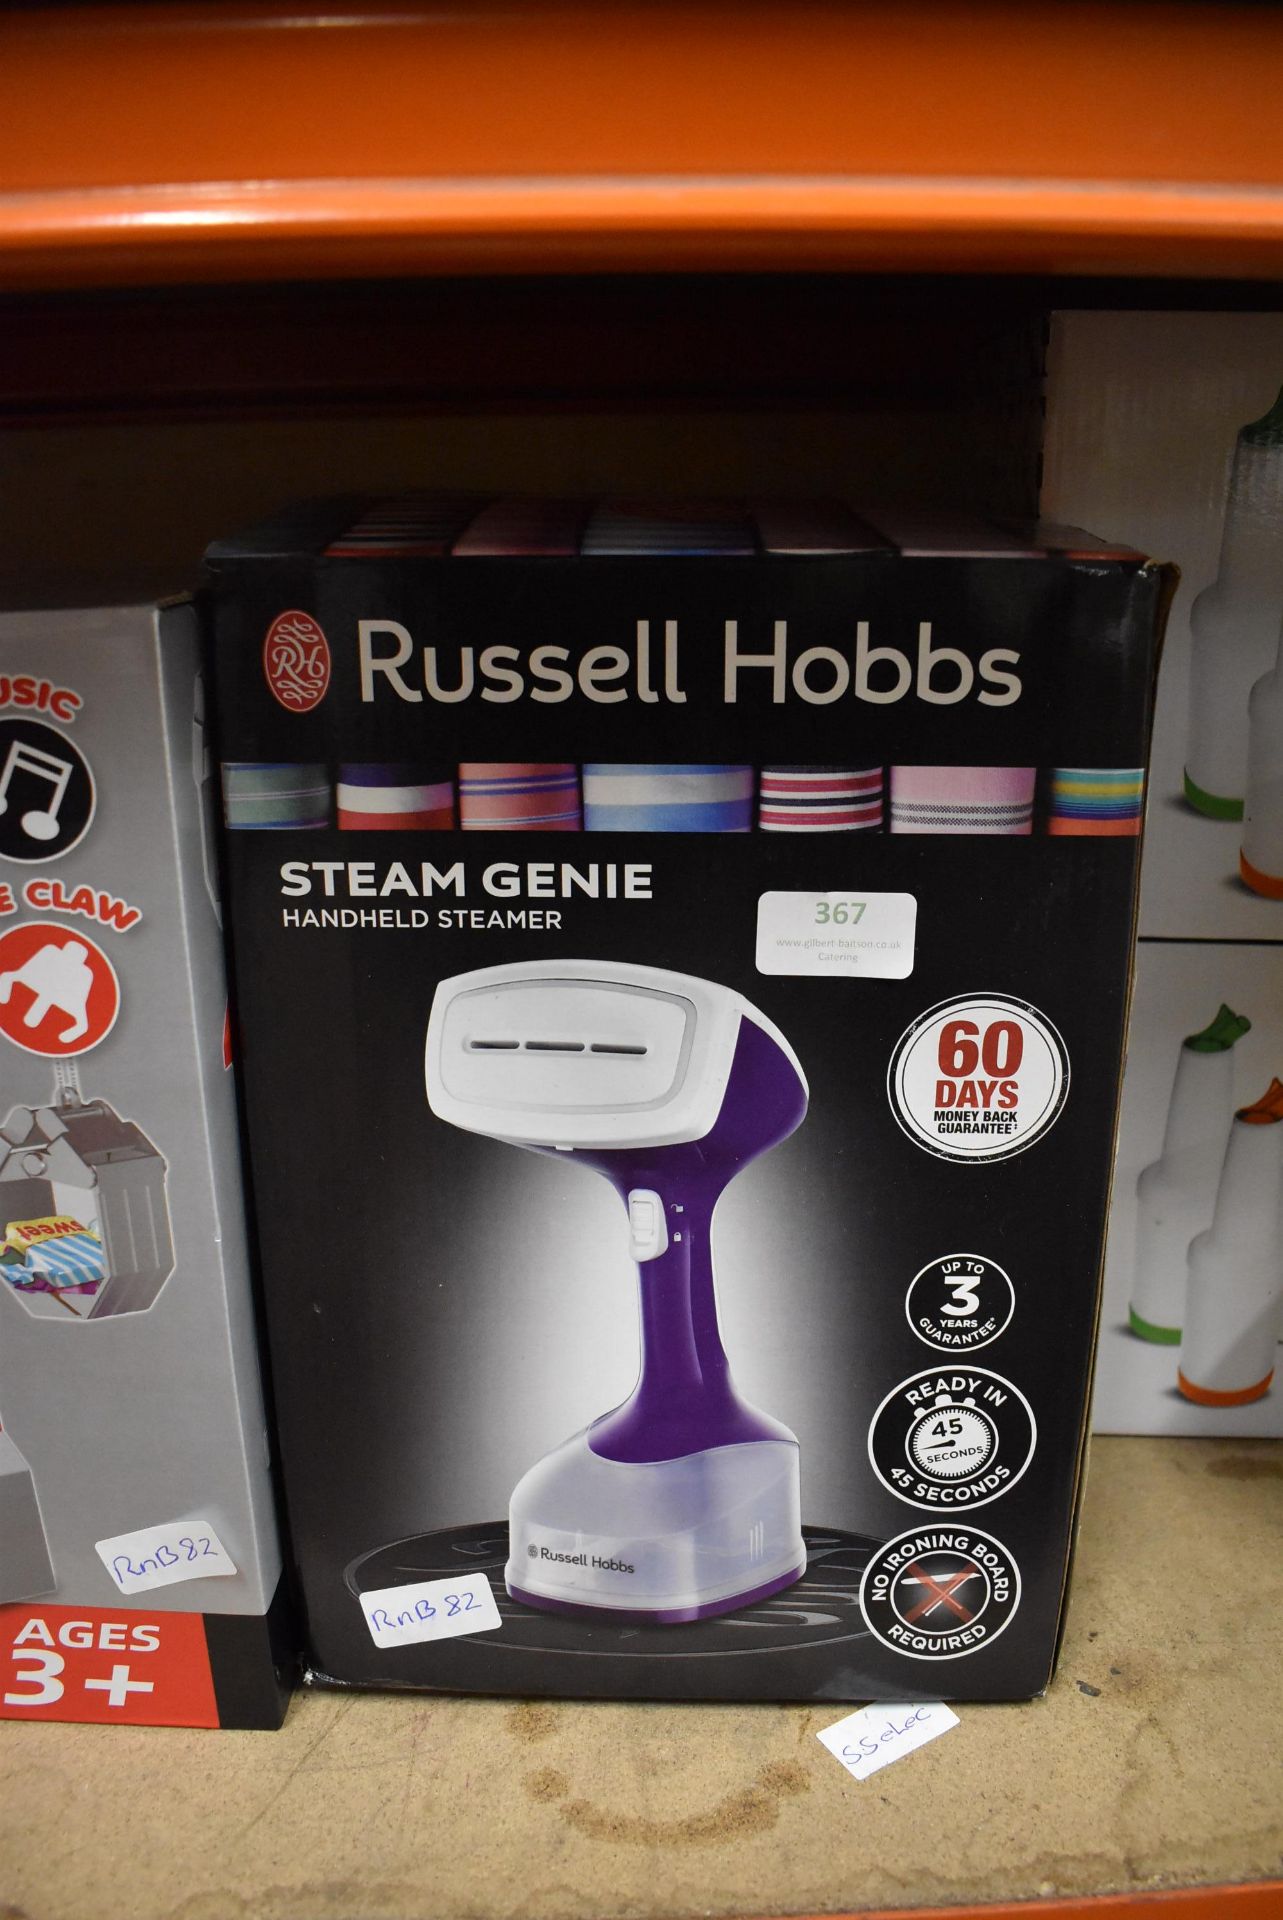 *Russell Hobbs Steam Genie Handheld Steamer